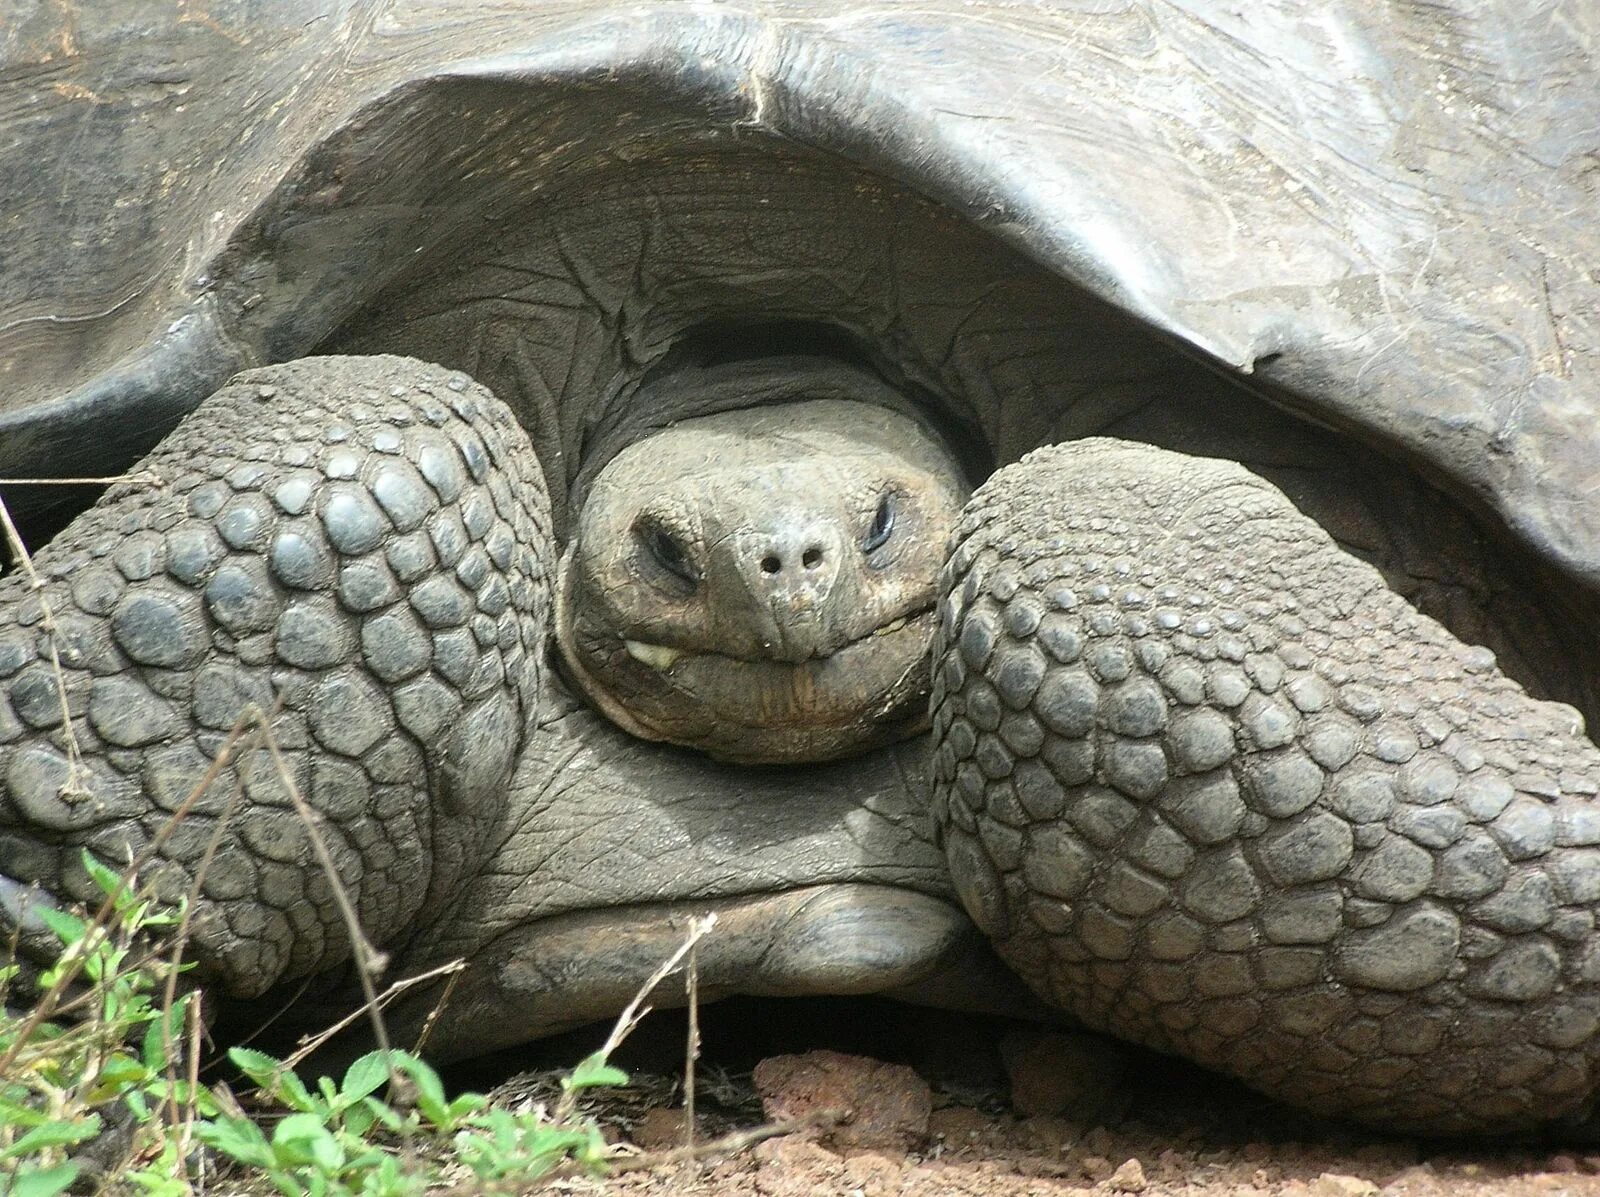 Галапагосская черепаха. Галапагосская черепаха аквадон. Галапагосская черепаха арт. Большая черепаха с клыками. Череп галапагосской черепахи